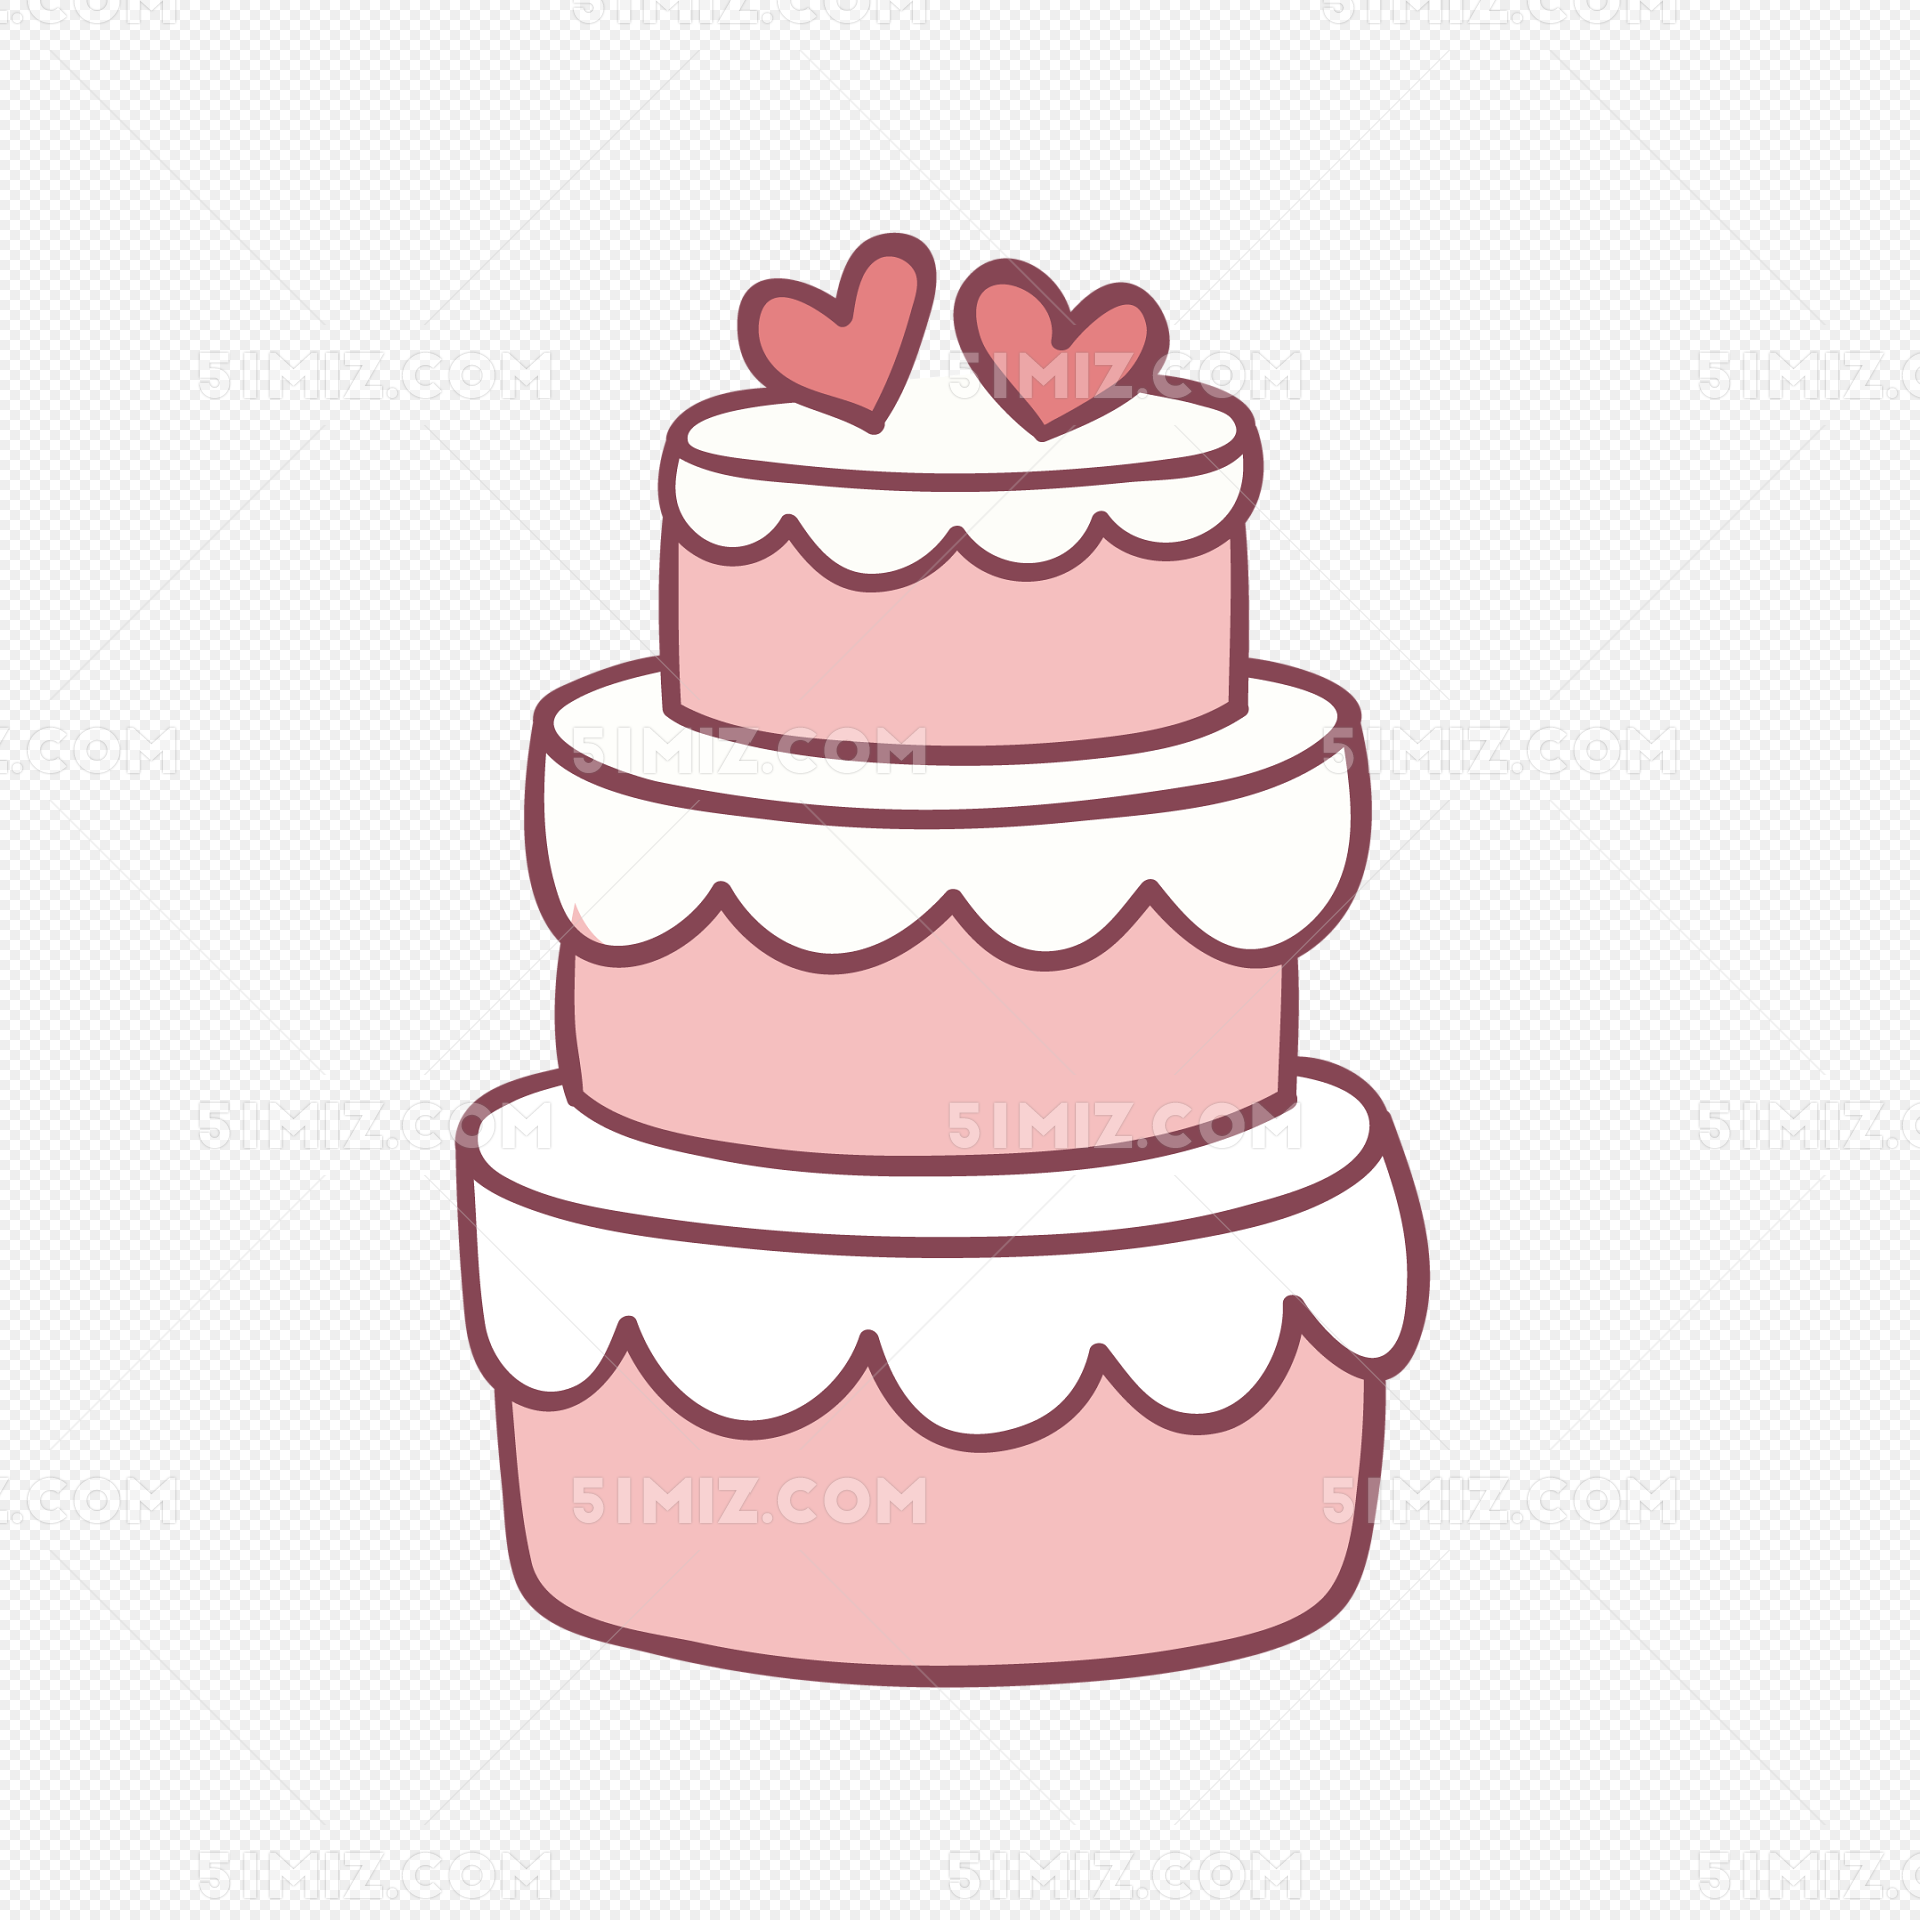 矢量手绘卡通生日蛋糕图片素材免费下载 - 觅知网